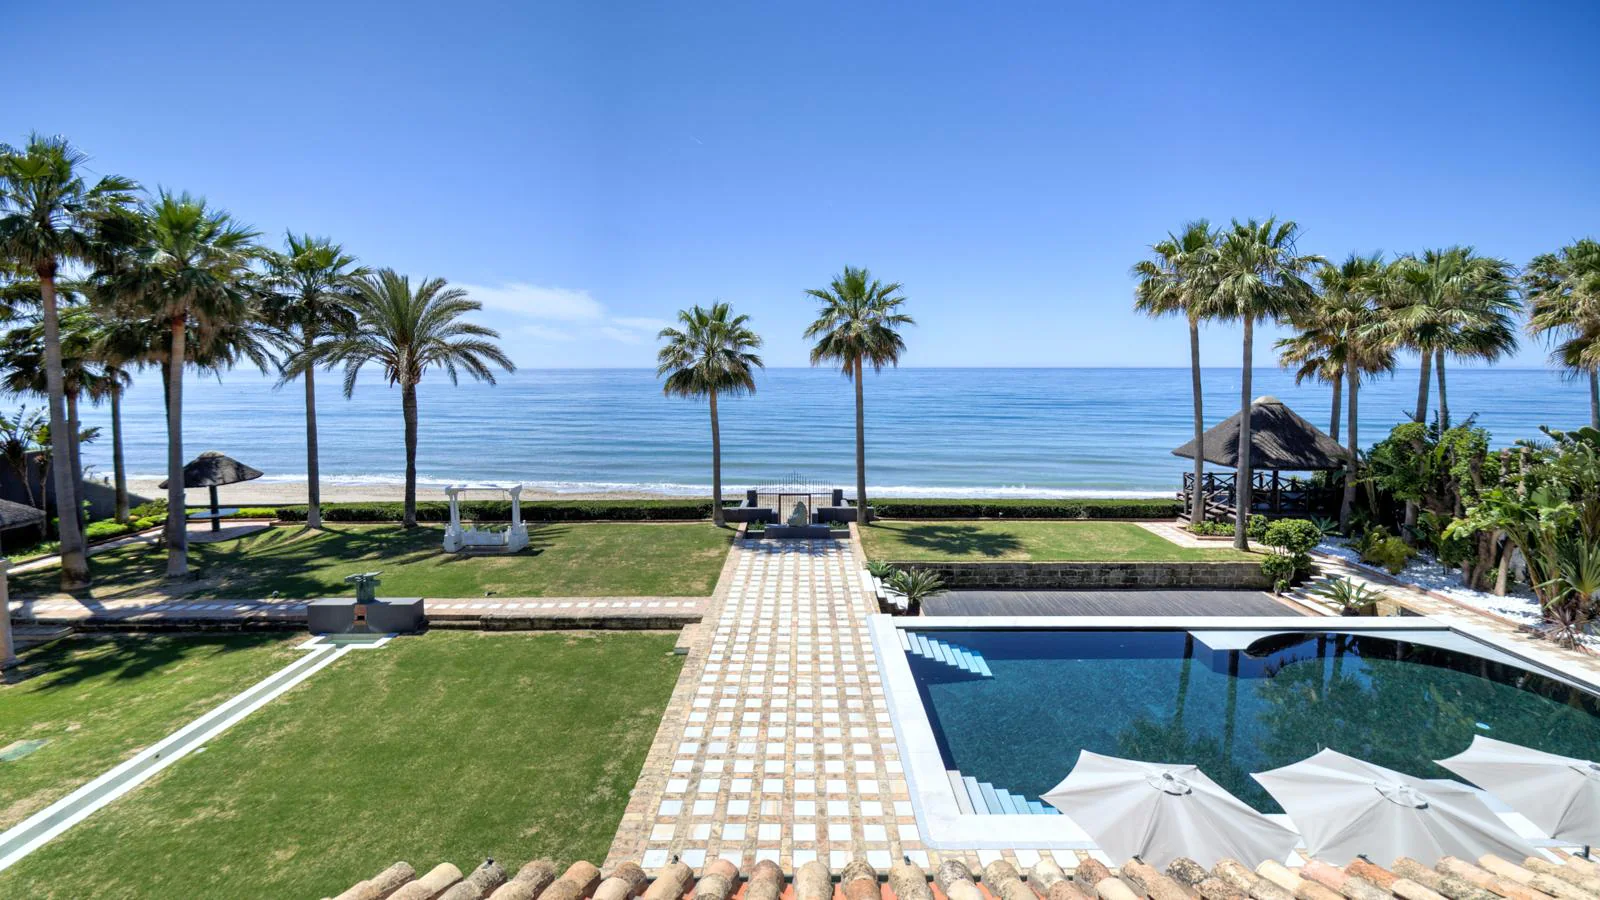 Villa en Los Monteros. El exterior de la mansión es un entorno paradisíaco con jardines tropicales, piscina, gazebo balinés y barbacoa-comedor. El principal encanto de la propiedad: su pasillo de piedra hasta el mar. Está a la venta por 17.000.000 de euros